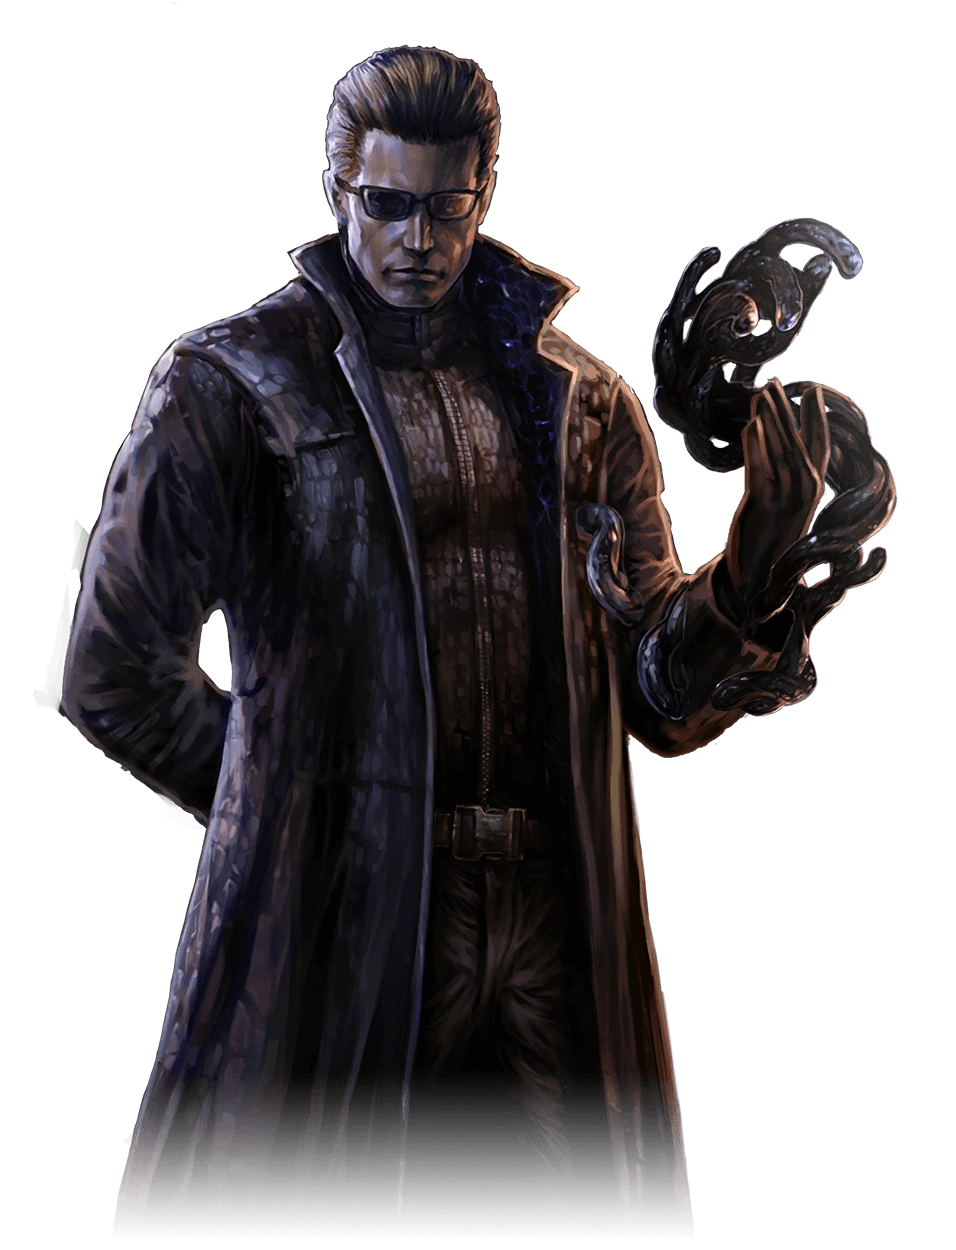 Resident Evil, Resident Evil Wiki